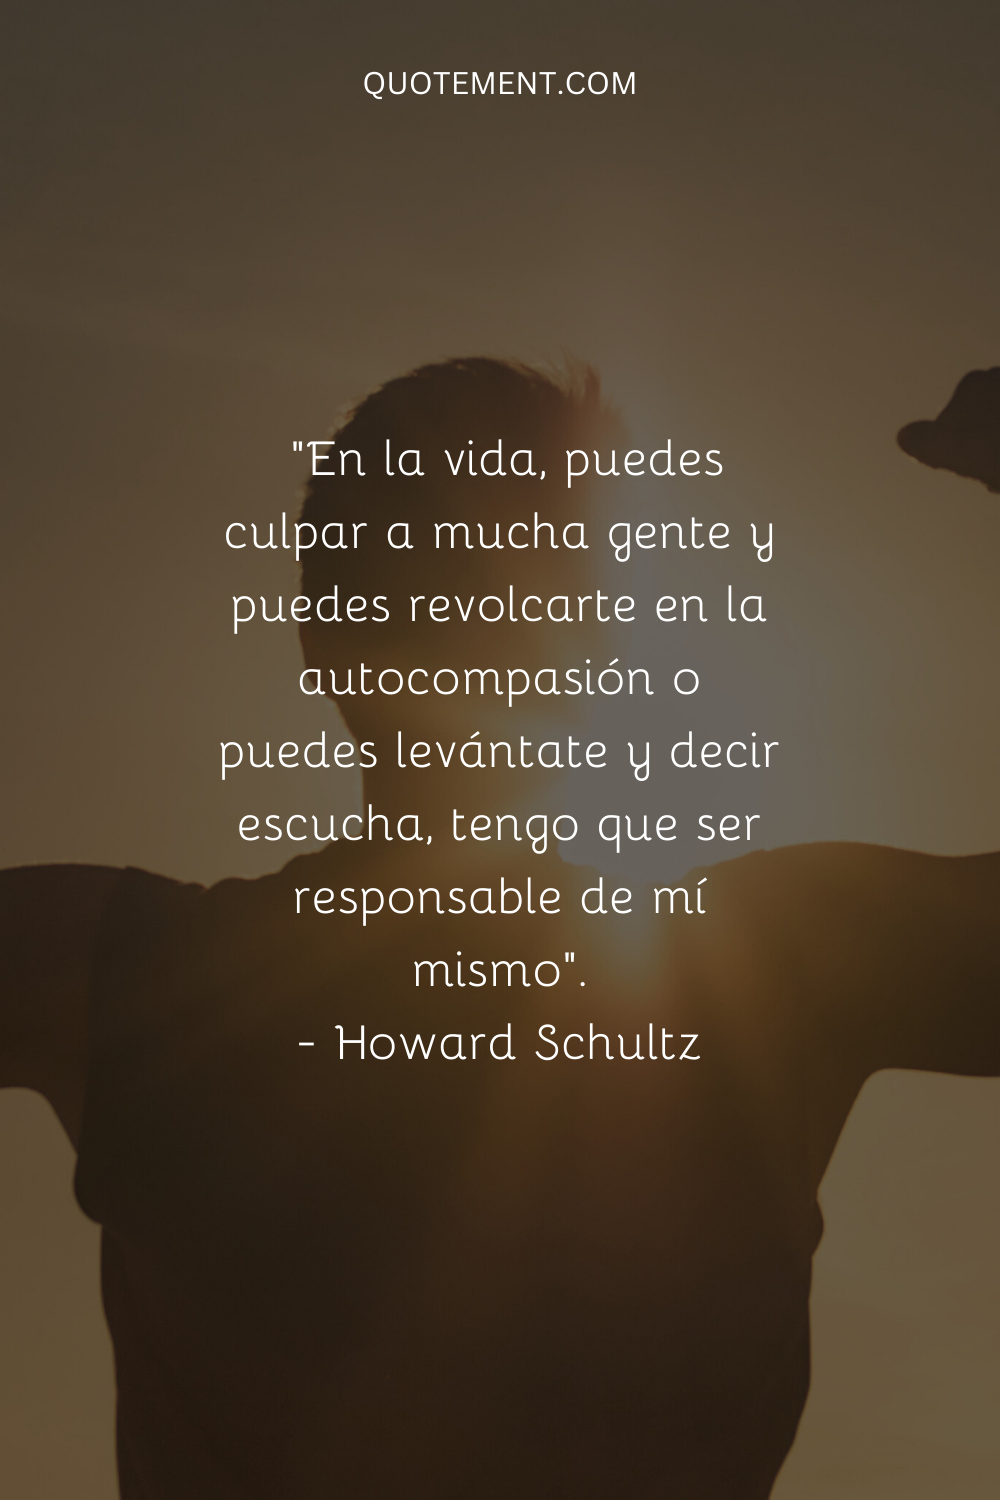 "En la vida, puedes culpar a mucha gente y revolcarte en la autocompasión o puedes levantarte y decir escucha, tengo que ser responsable de mí mismo". - Howard Schultz